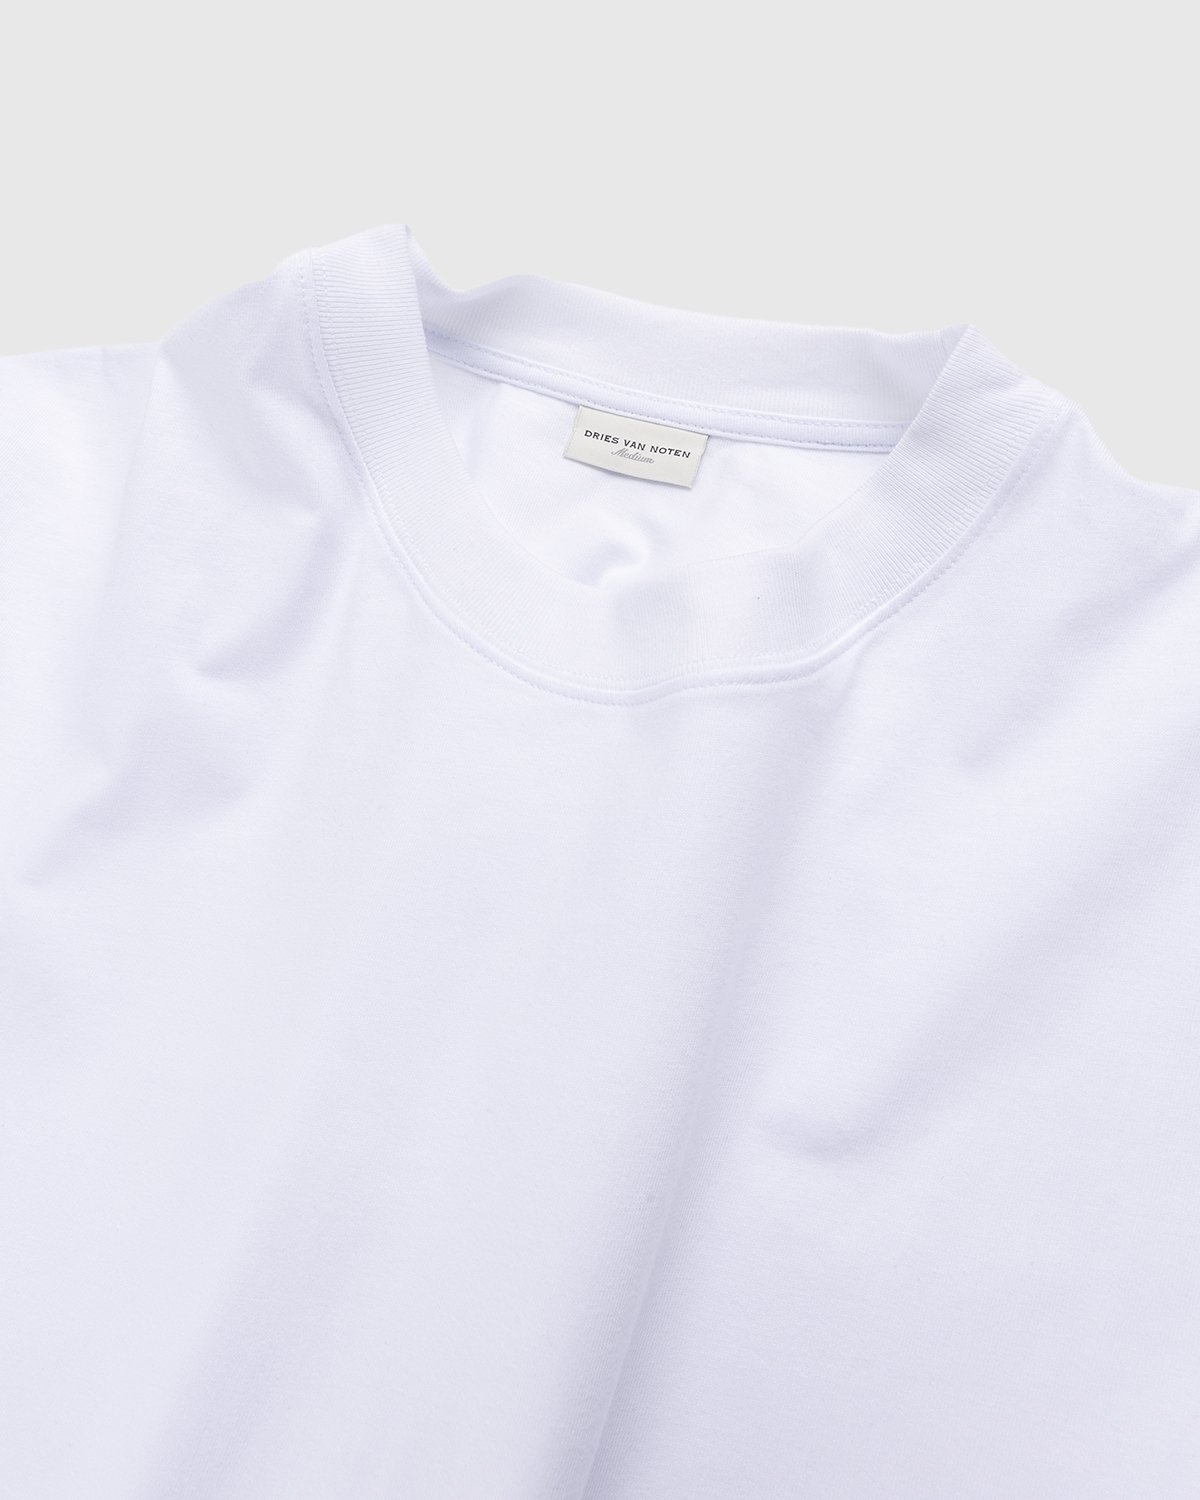 Dries van Noten – Hen Oversized T-Shirt White - Tops - White - Image 3